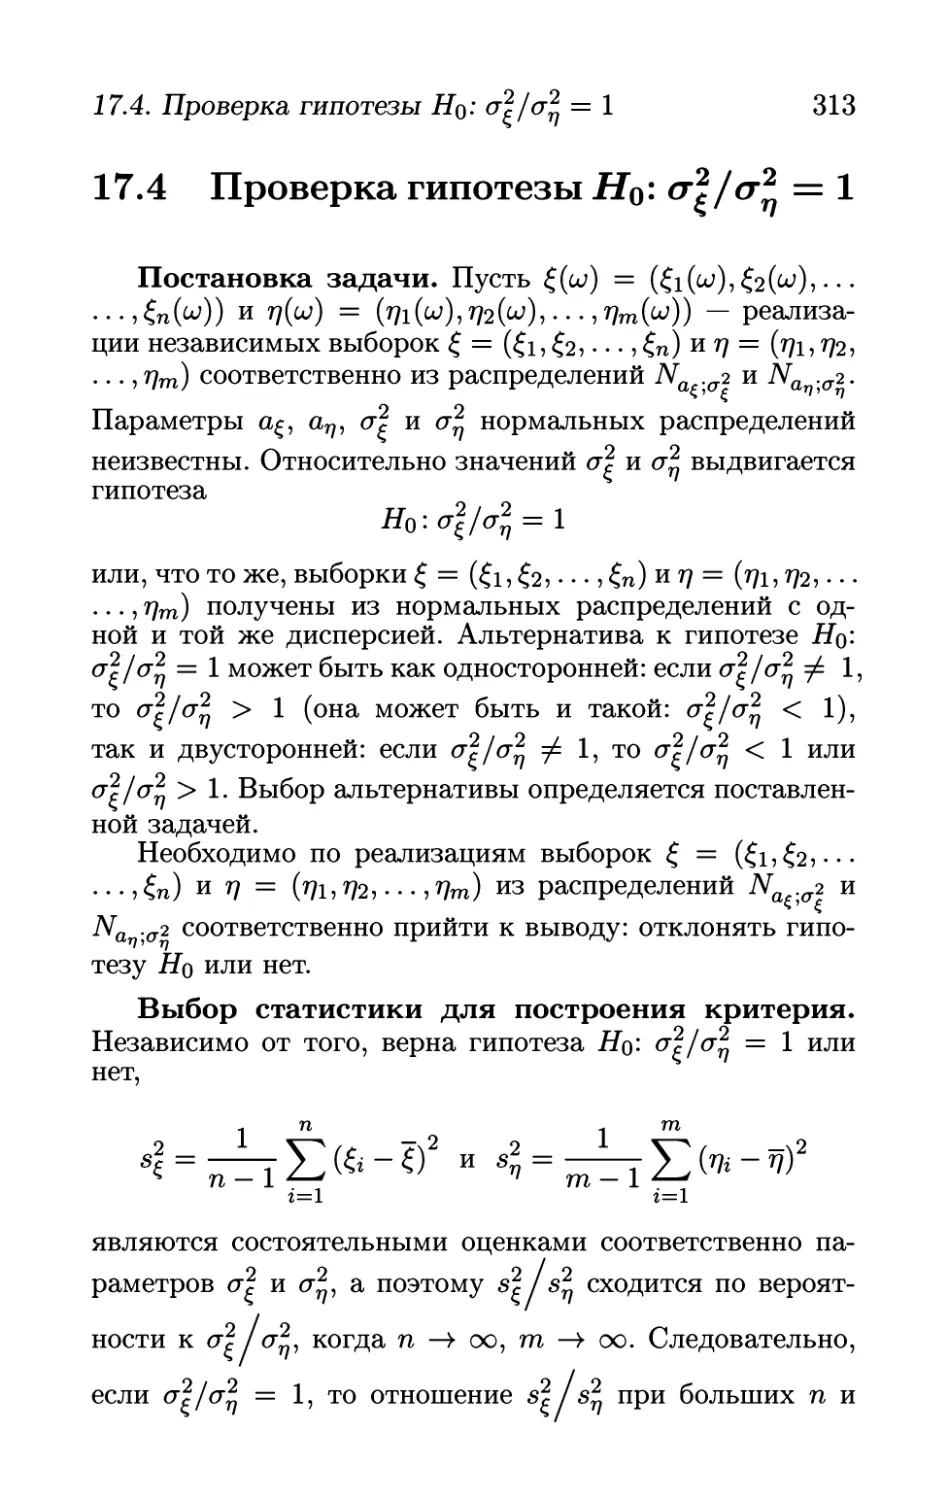 17.4 Проверка гипотезы Но: сигма_кси^2/сигма_эта^2= 1